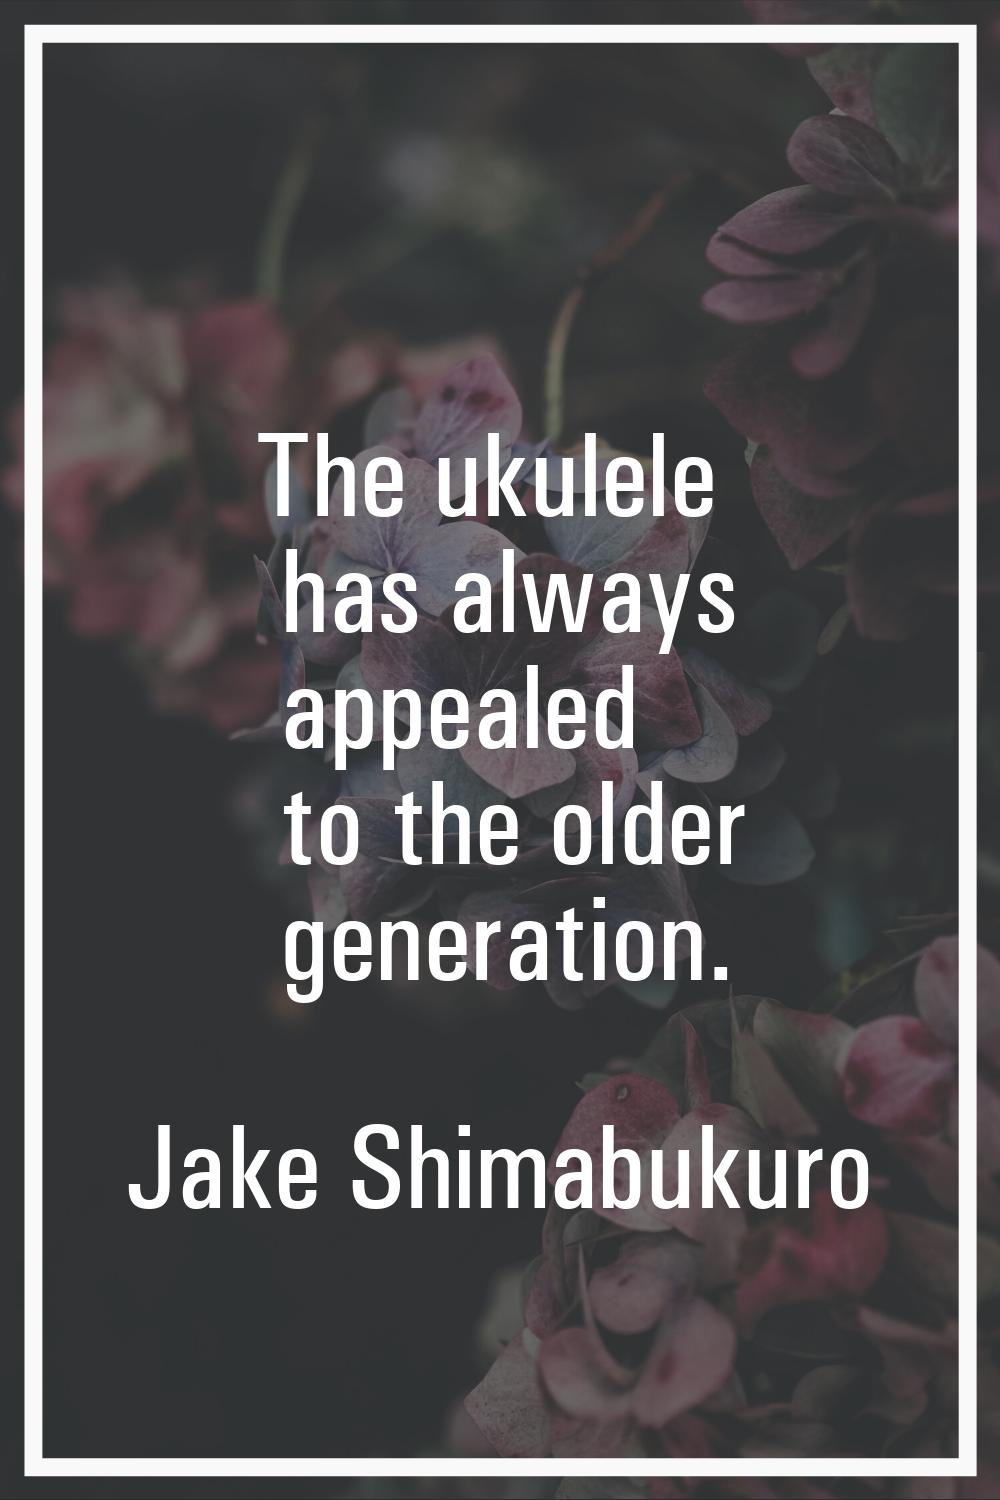 The ukulele has always appealed to the older generation.